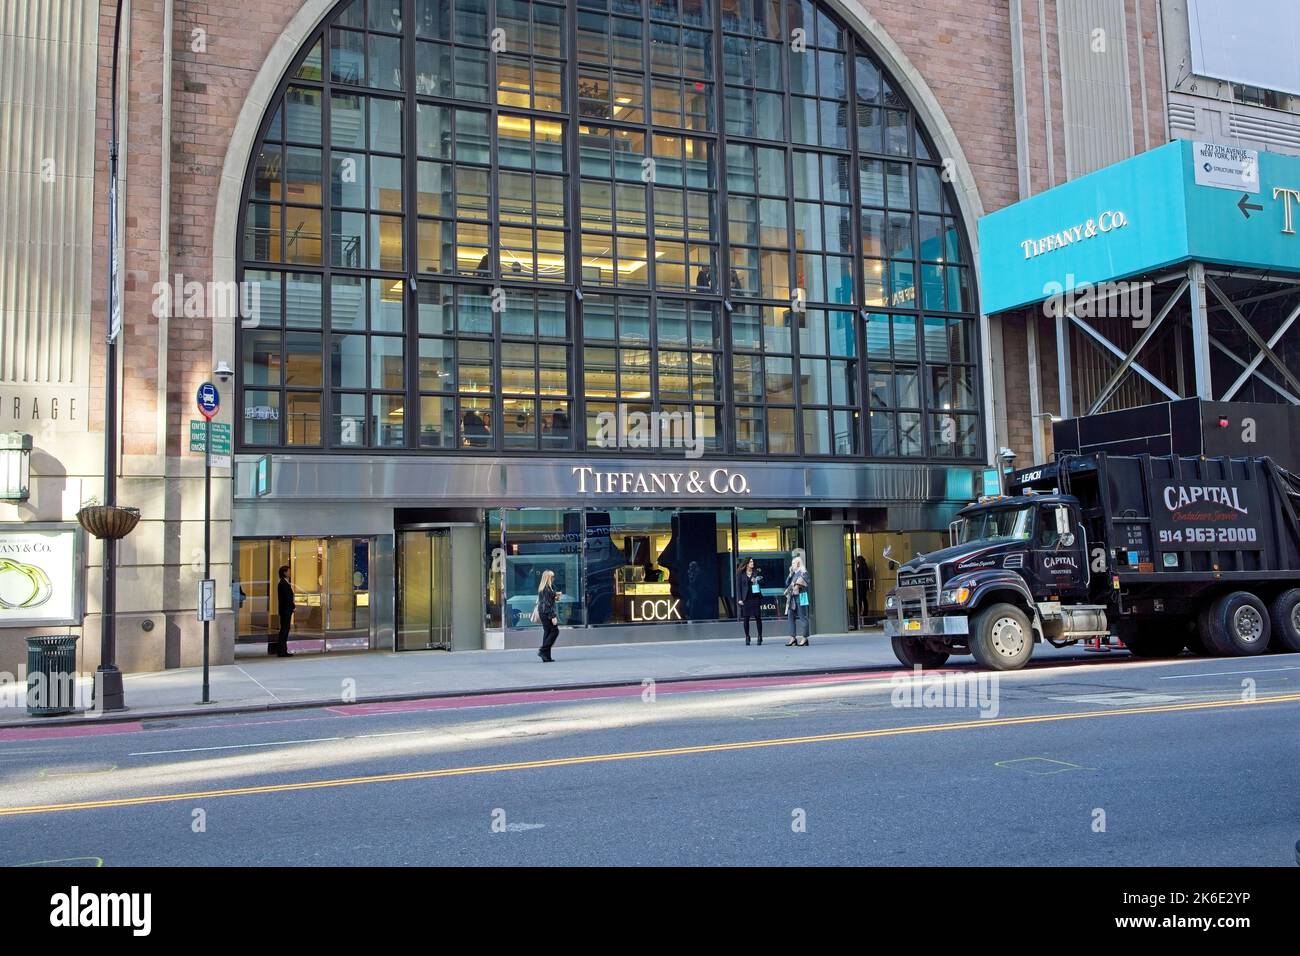 New York, NY, USA - 13. Oktober 2022: Eingang Tiffany & Co. In der 57. St, die mehrere Stockwerke über dem Eingang der 57. Street zeigt Stockfoto